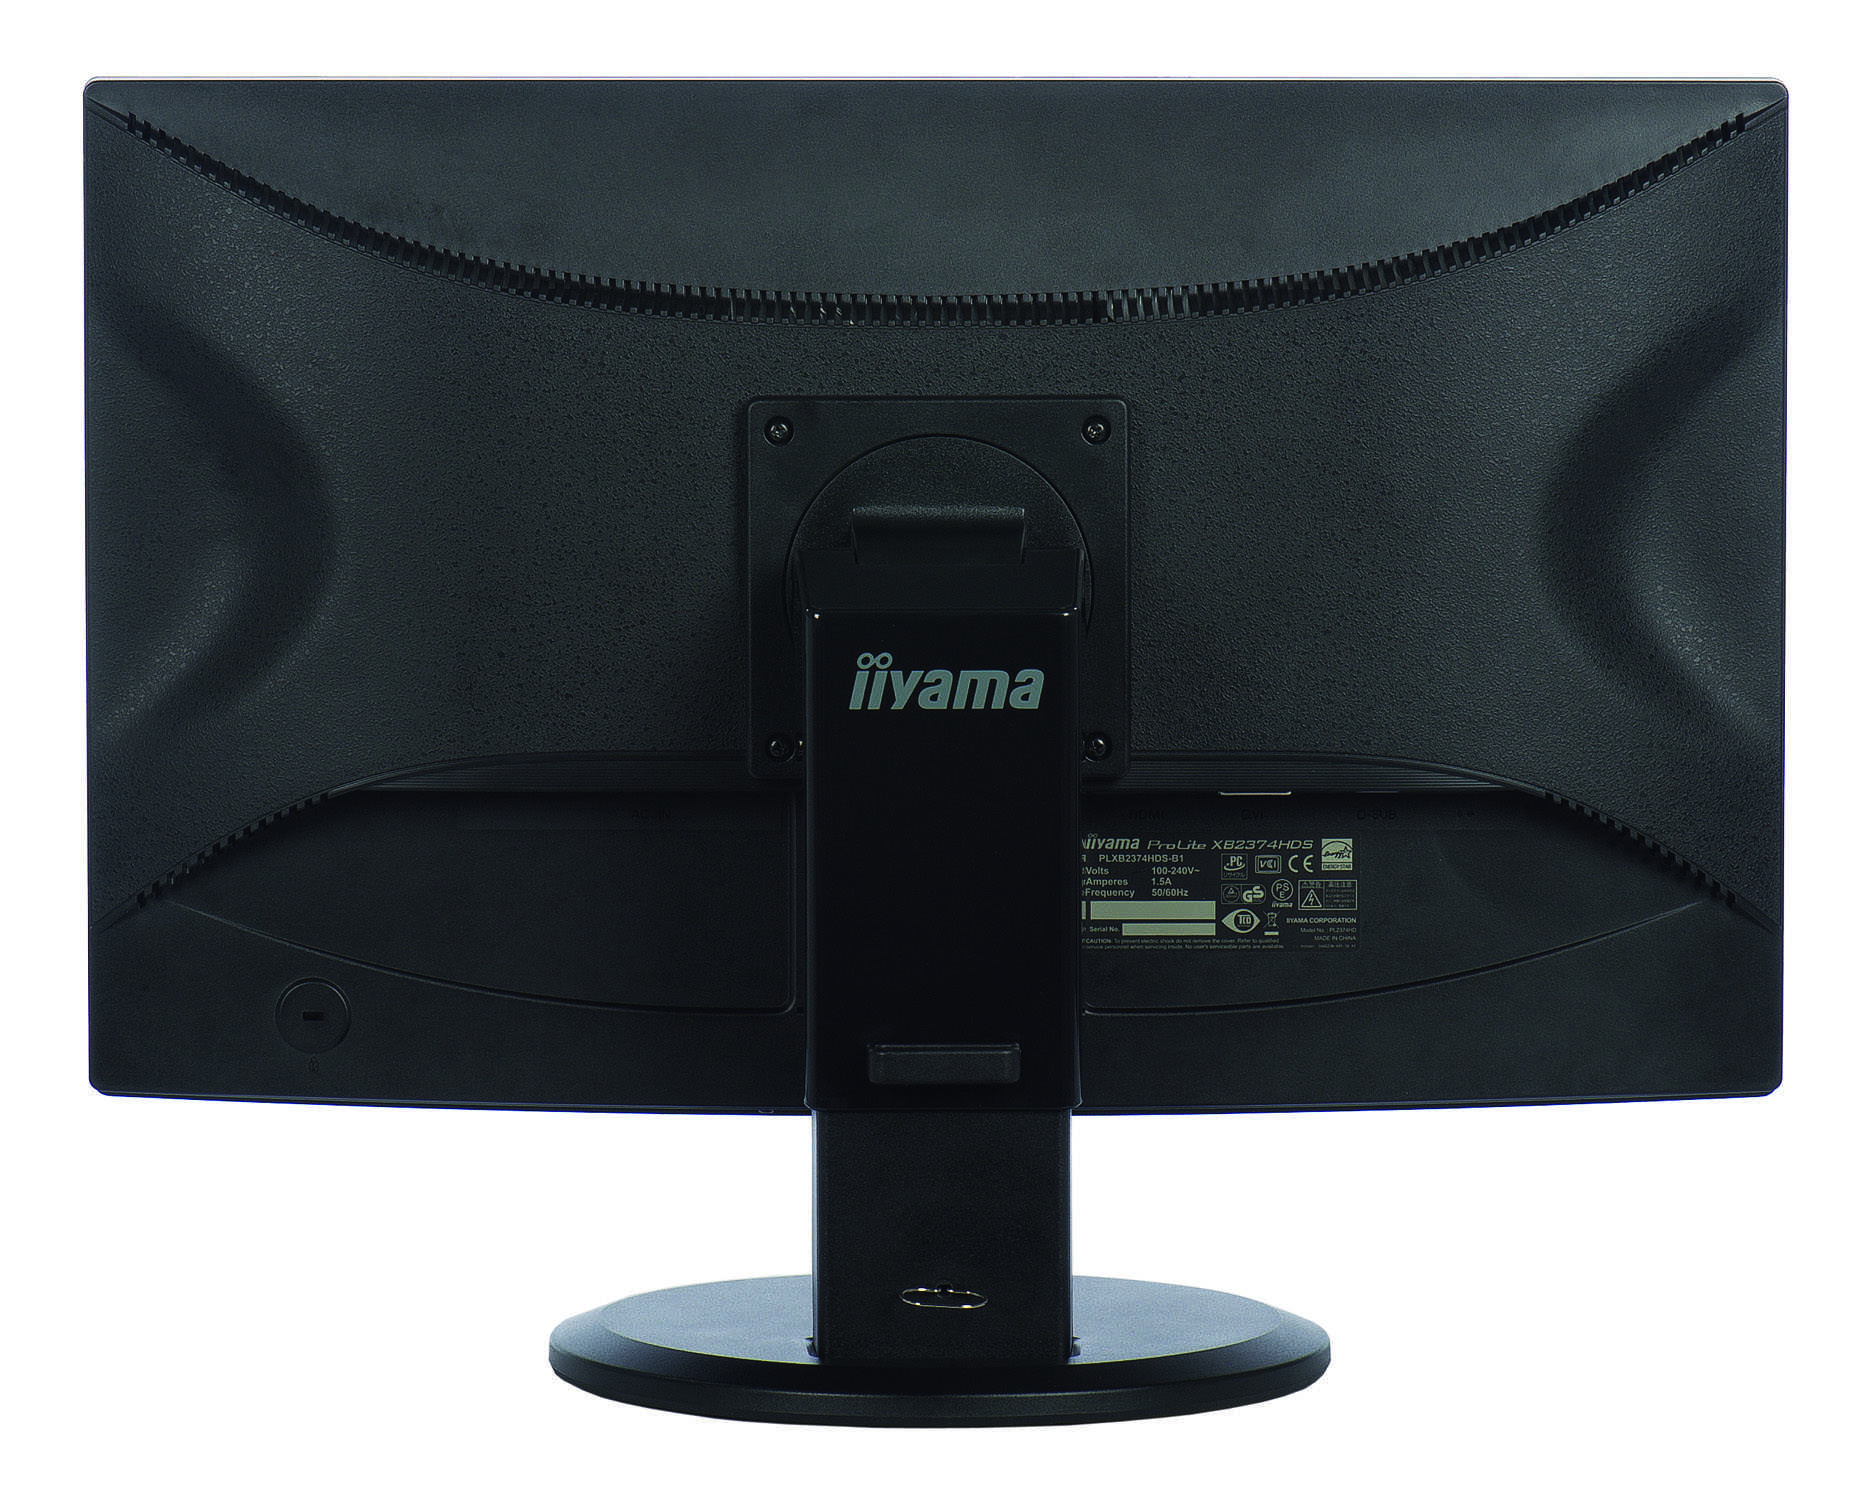 Жк монитор 19.5" iiyama prolite b2083hsd-b1 — купить, цена и характеристики, отзывы